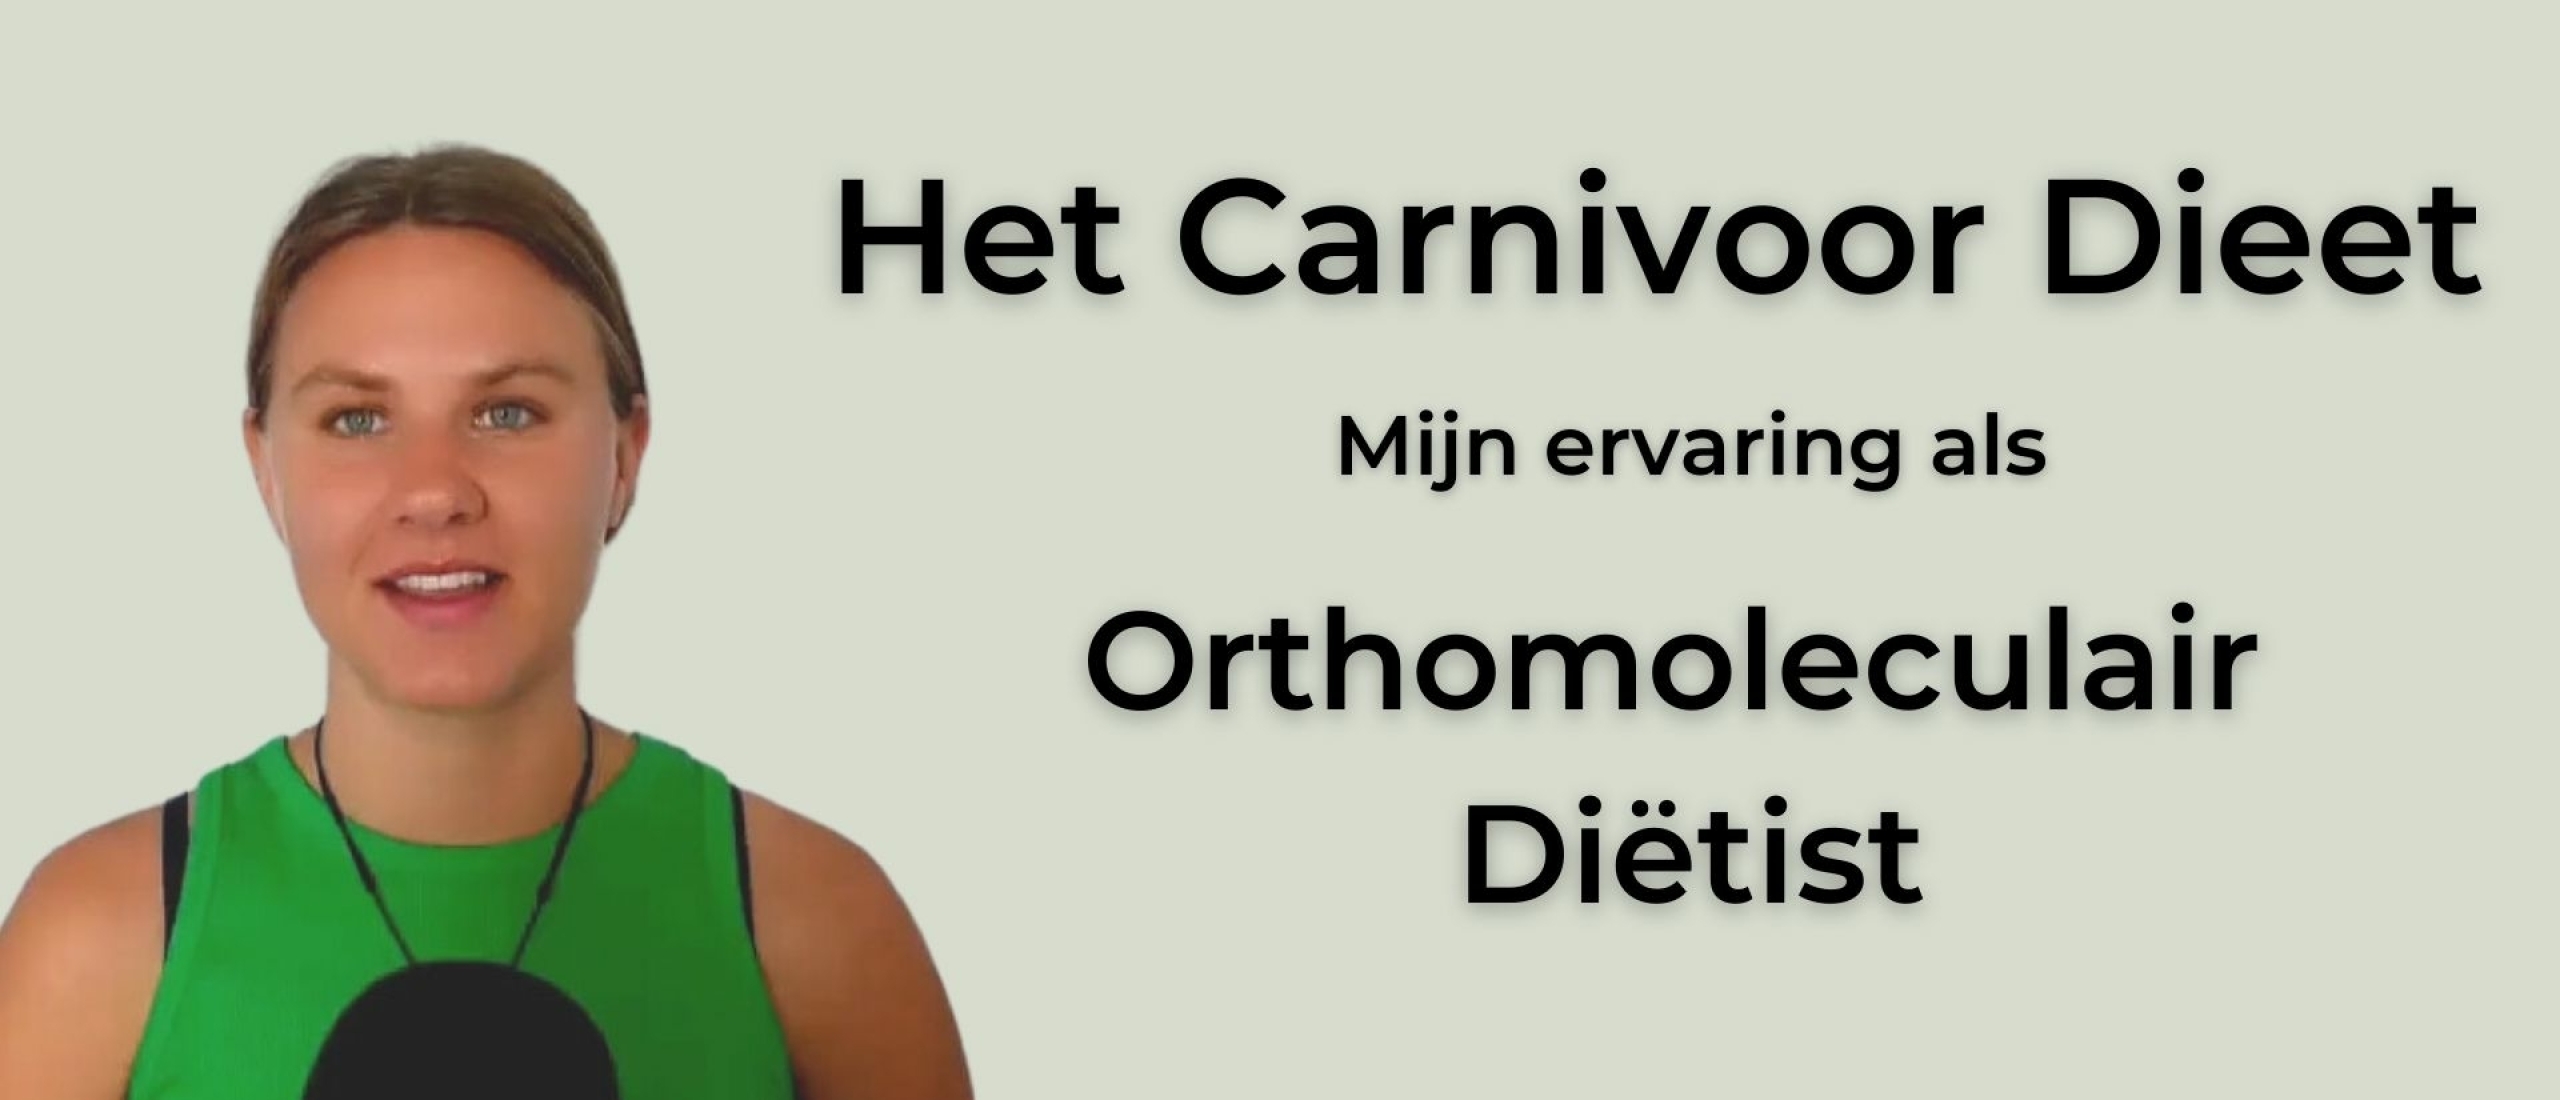 Carnivoor Dieet Wat is het? En mijn ervaring als Specialist